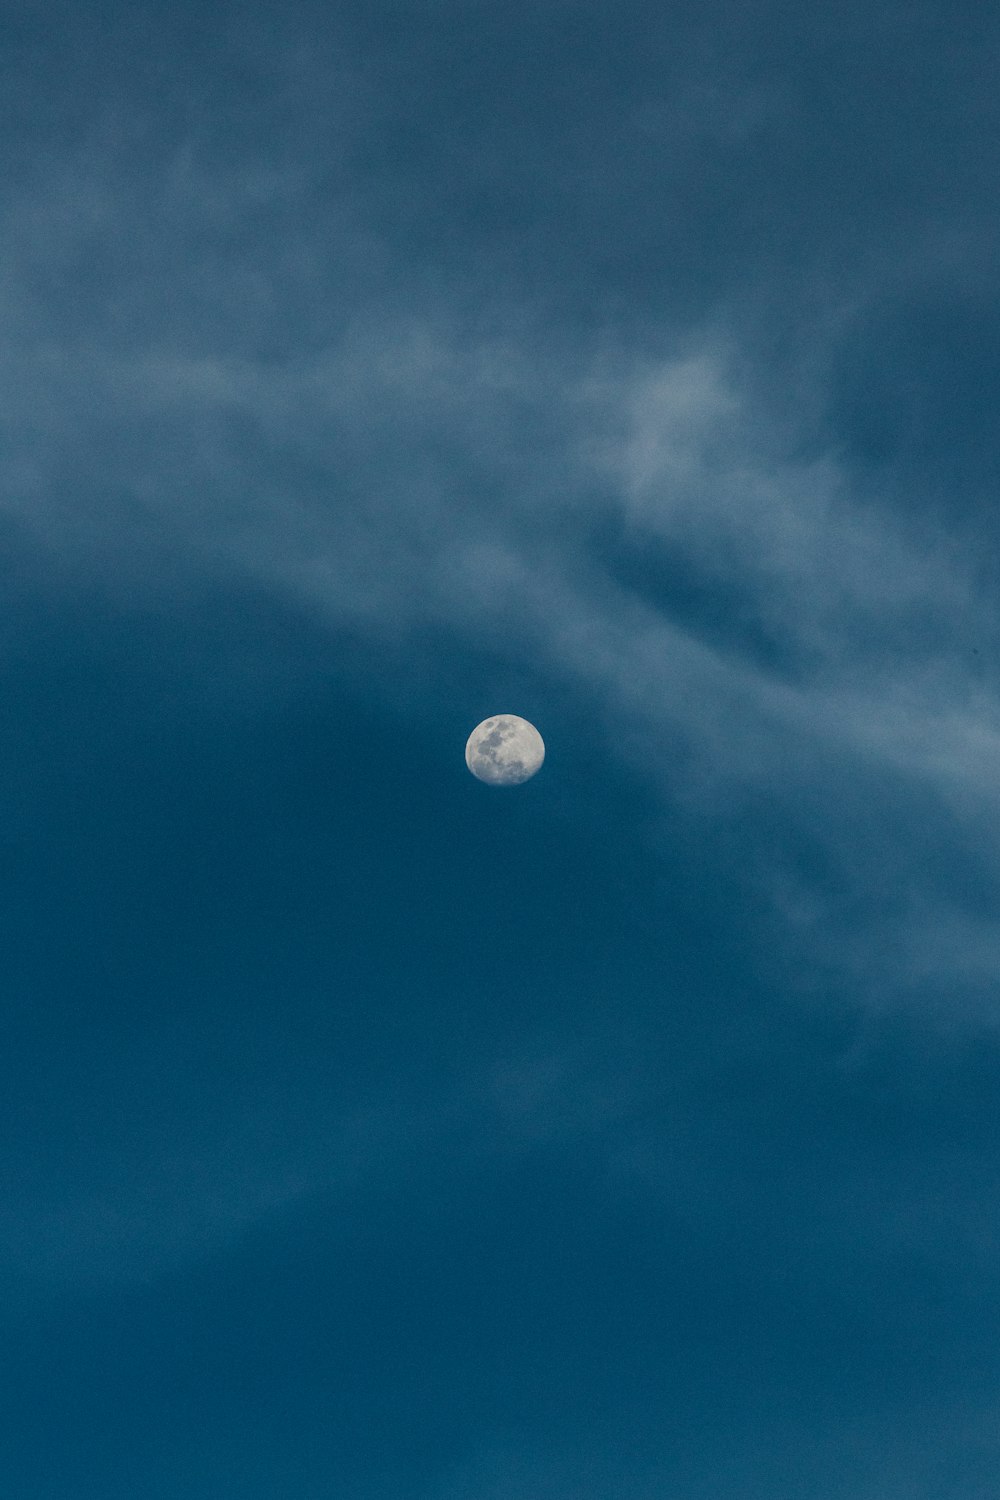 moon over clear sky